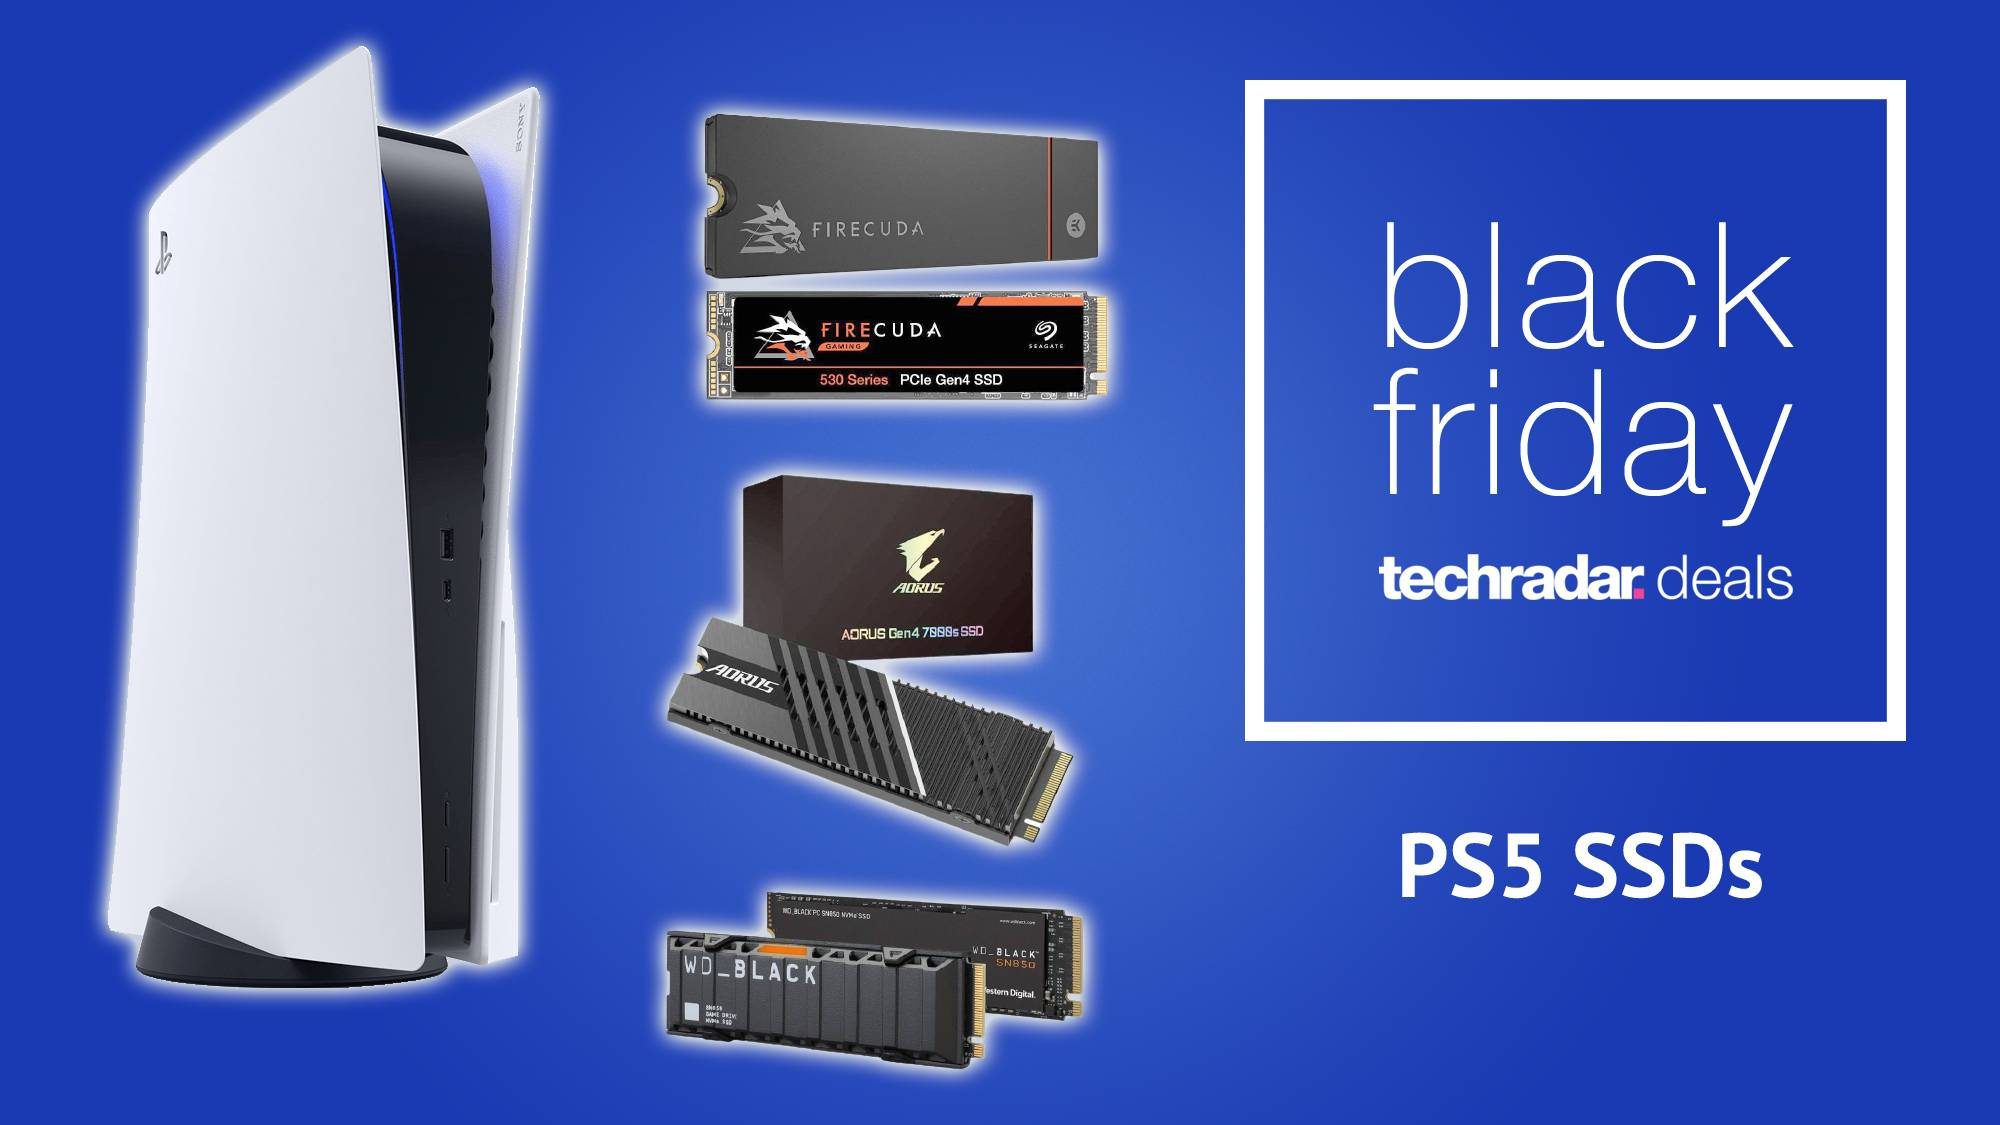 PS5 SSD Black Friday deals